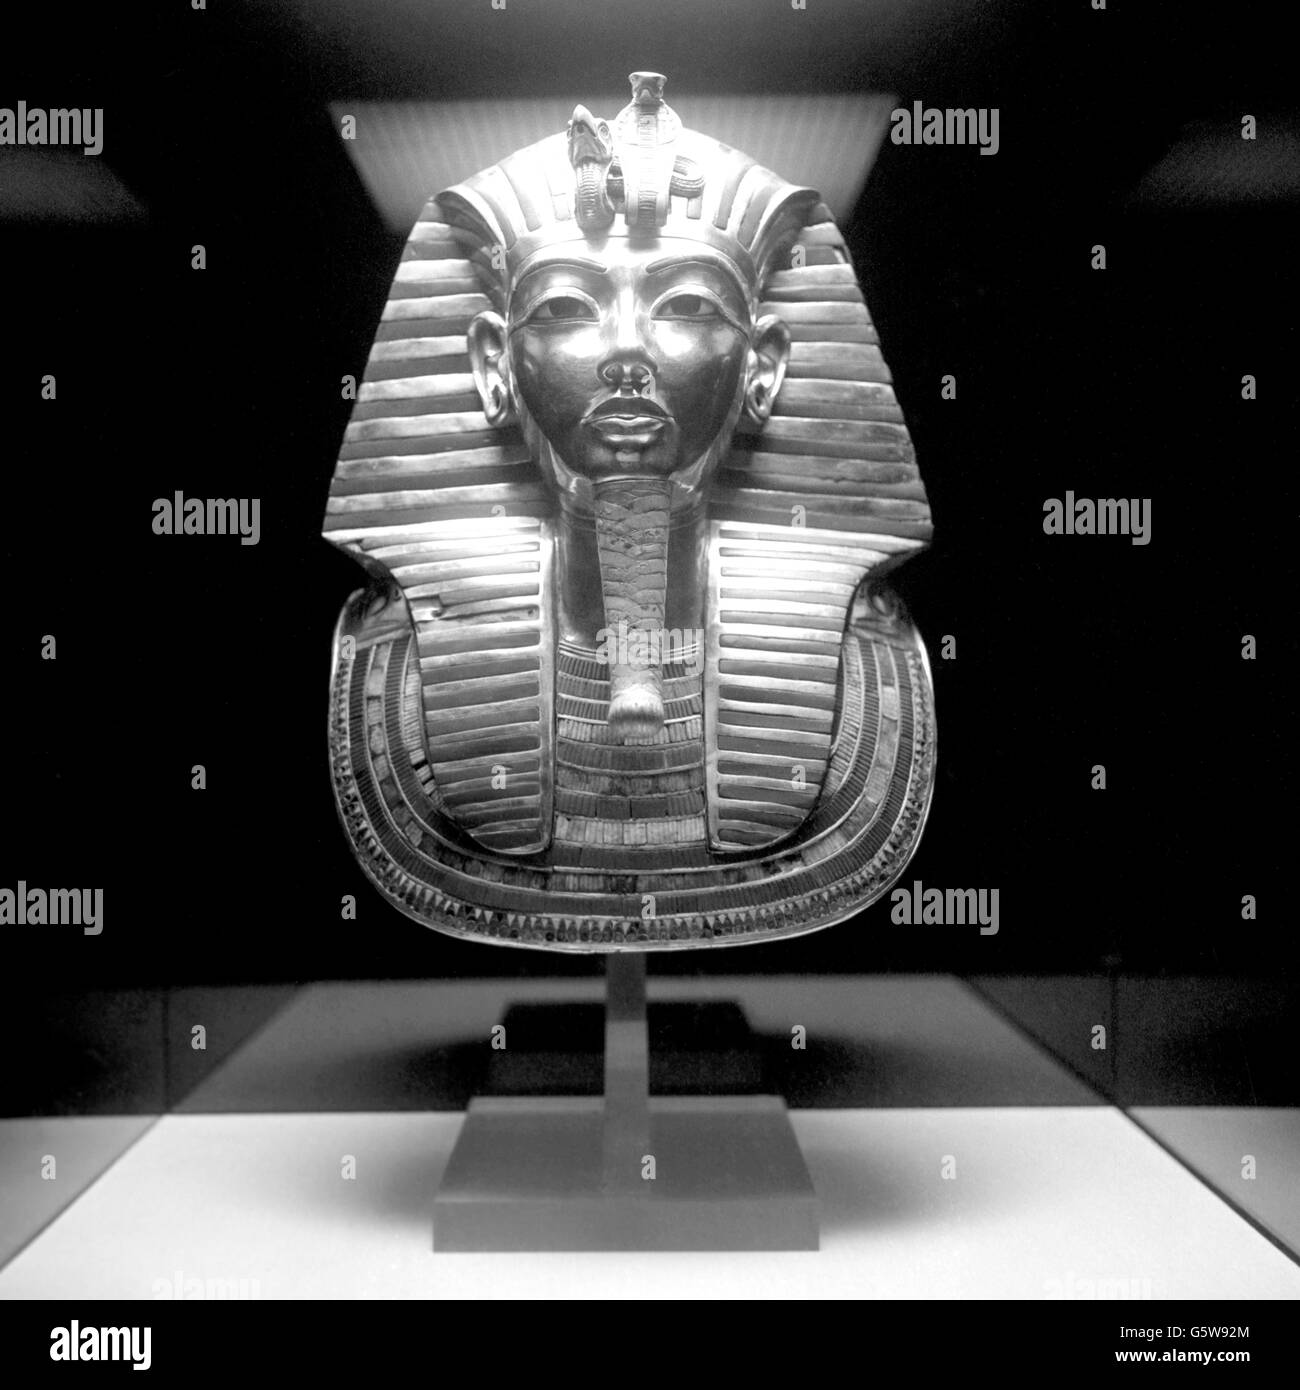 Geschichte - Tutanchamun Ausstellung - British Museum, London. Totenmaske des Pharao Tutanchamun. Stockfoto